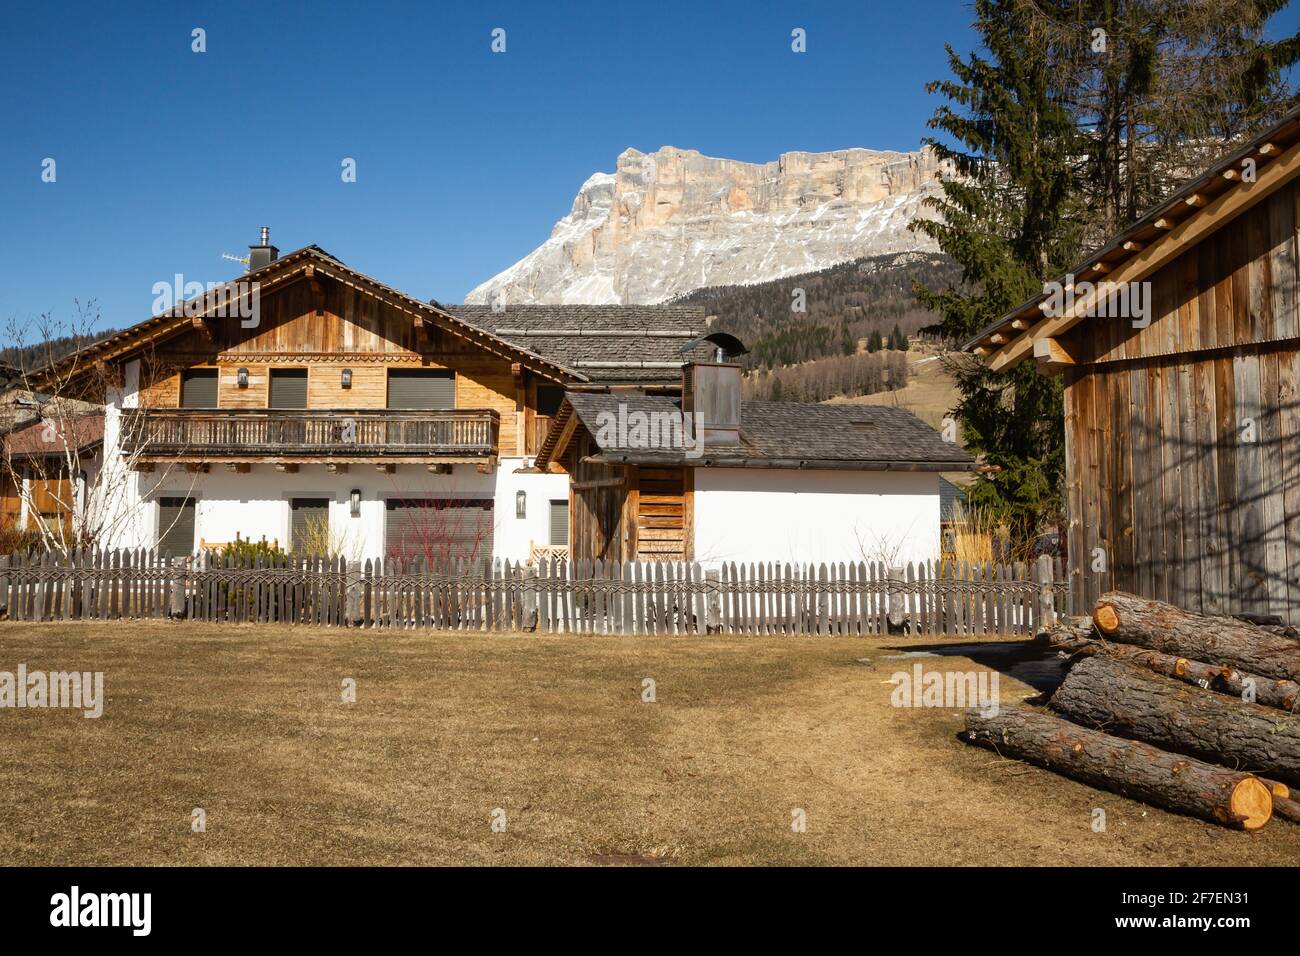 Maisons typiques dans les montagnes des Alpes italiennes Banque D'Images